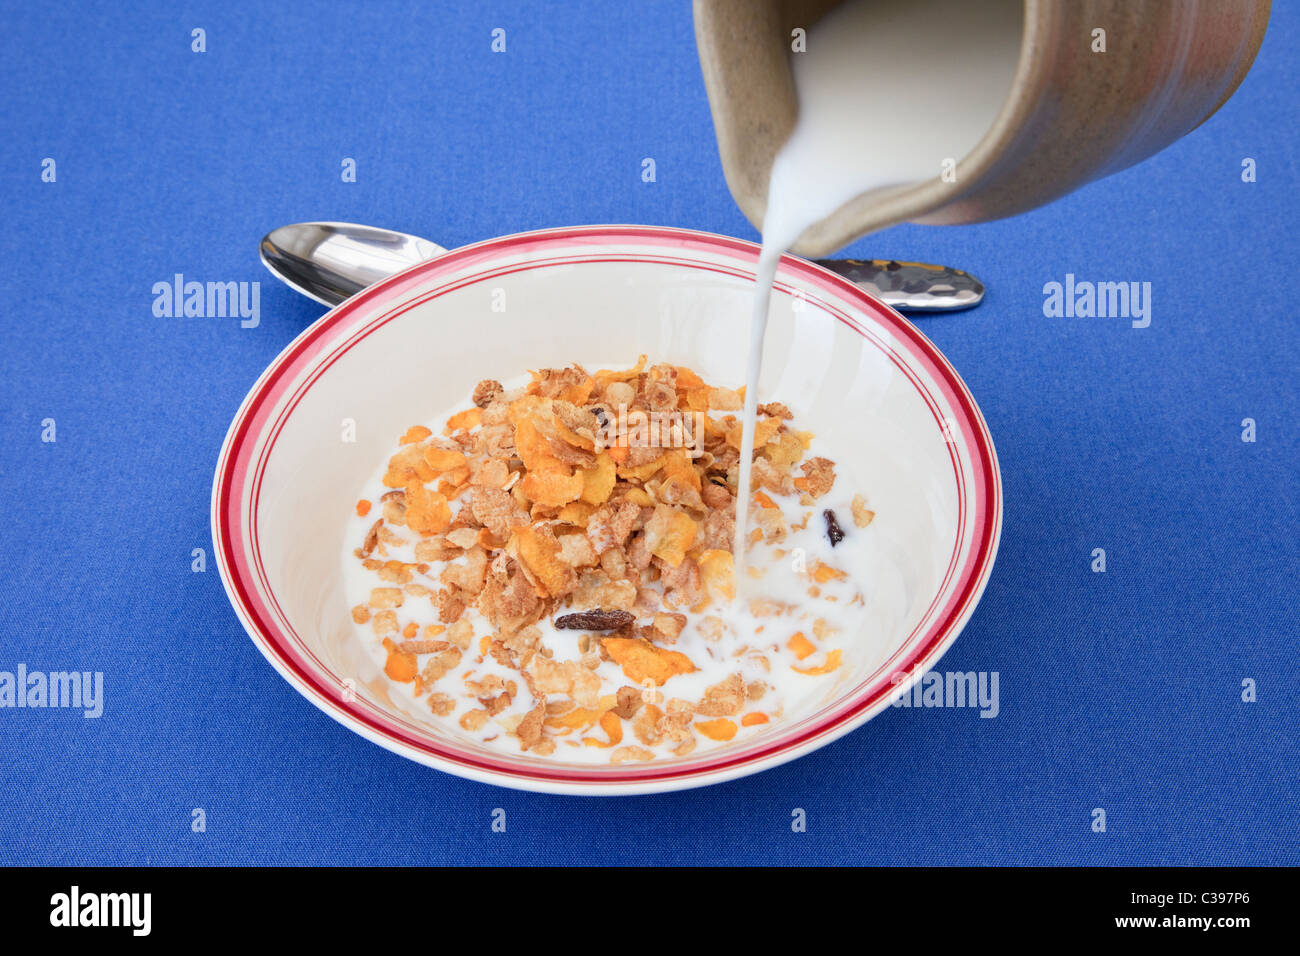 Verter la leche de una jarra en un tazón de cereal de desayuno desde arriba. Inglaterra Foto de stock